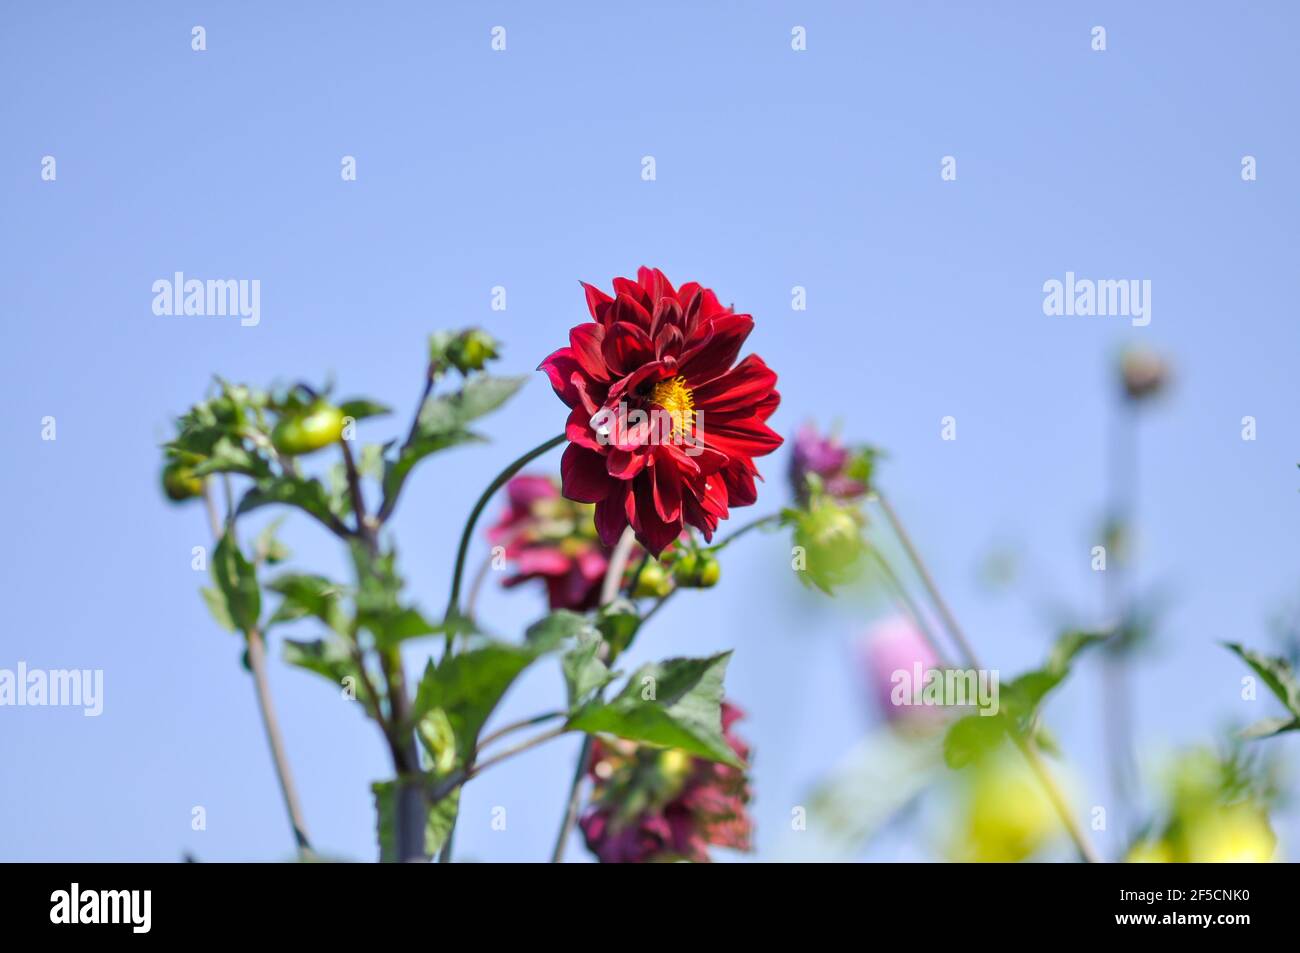 Eine rote Dahlia Blume auf einem blauen Himmel Hintergrund. Stockfoto